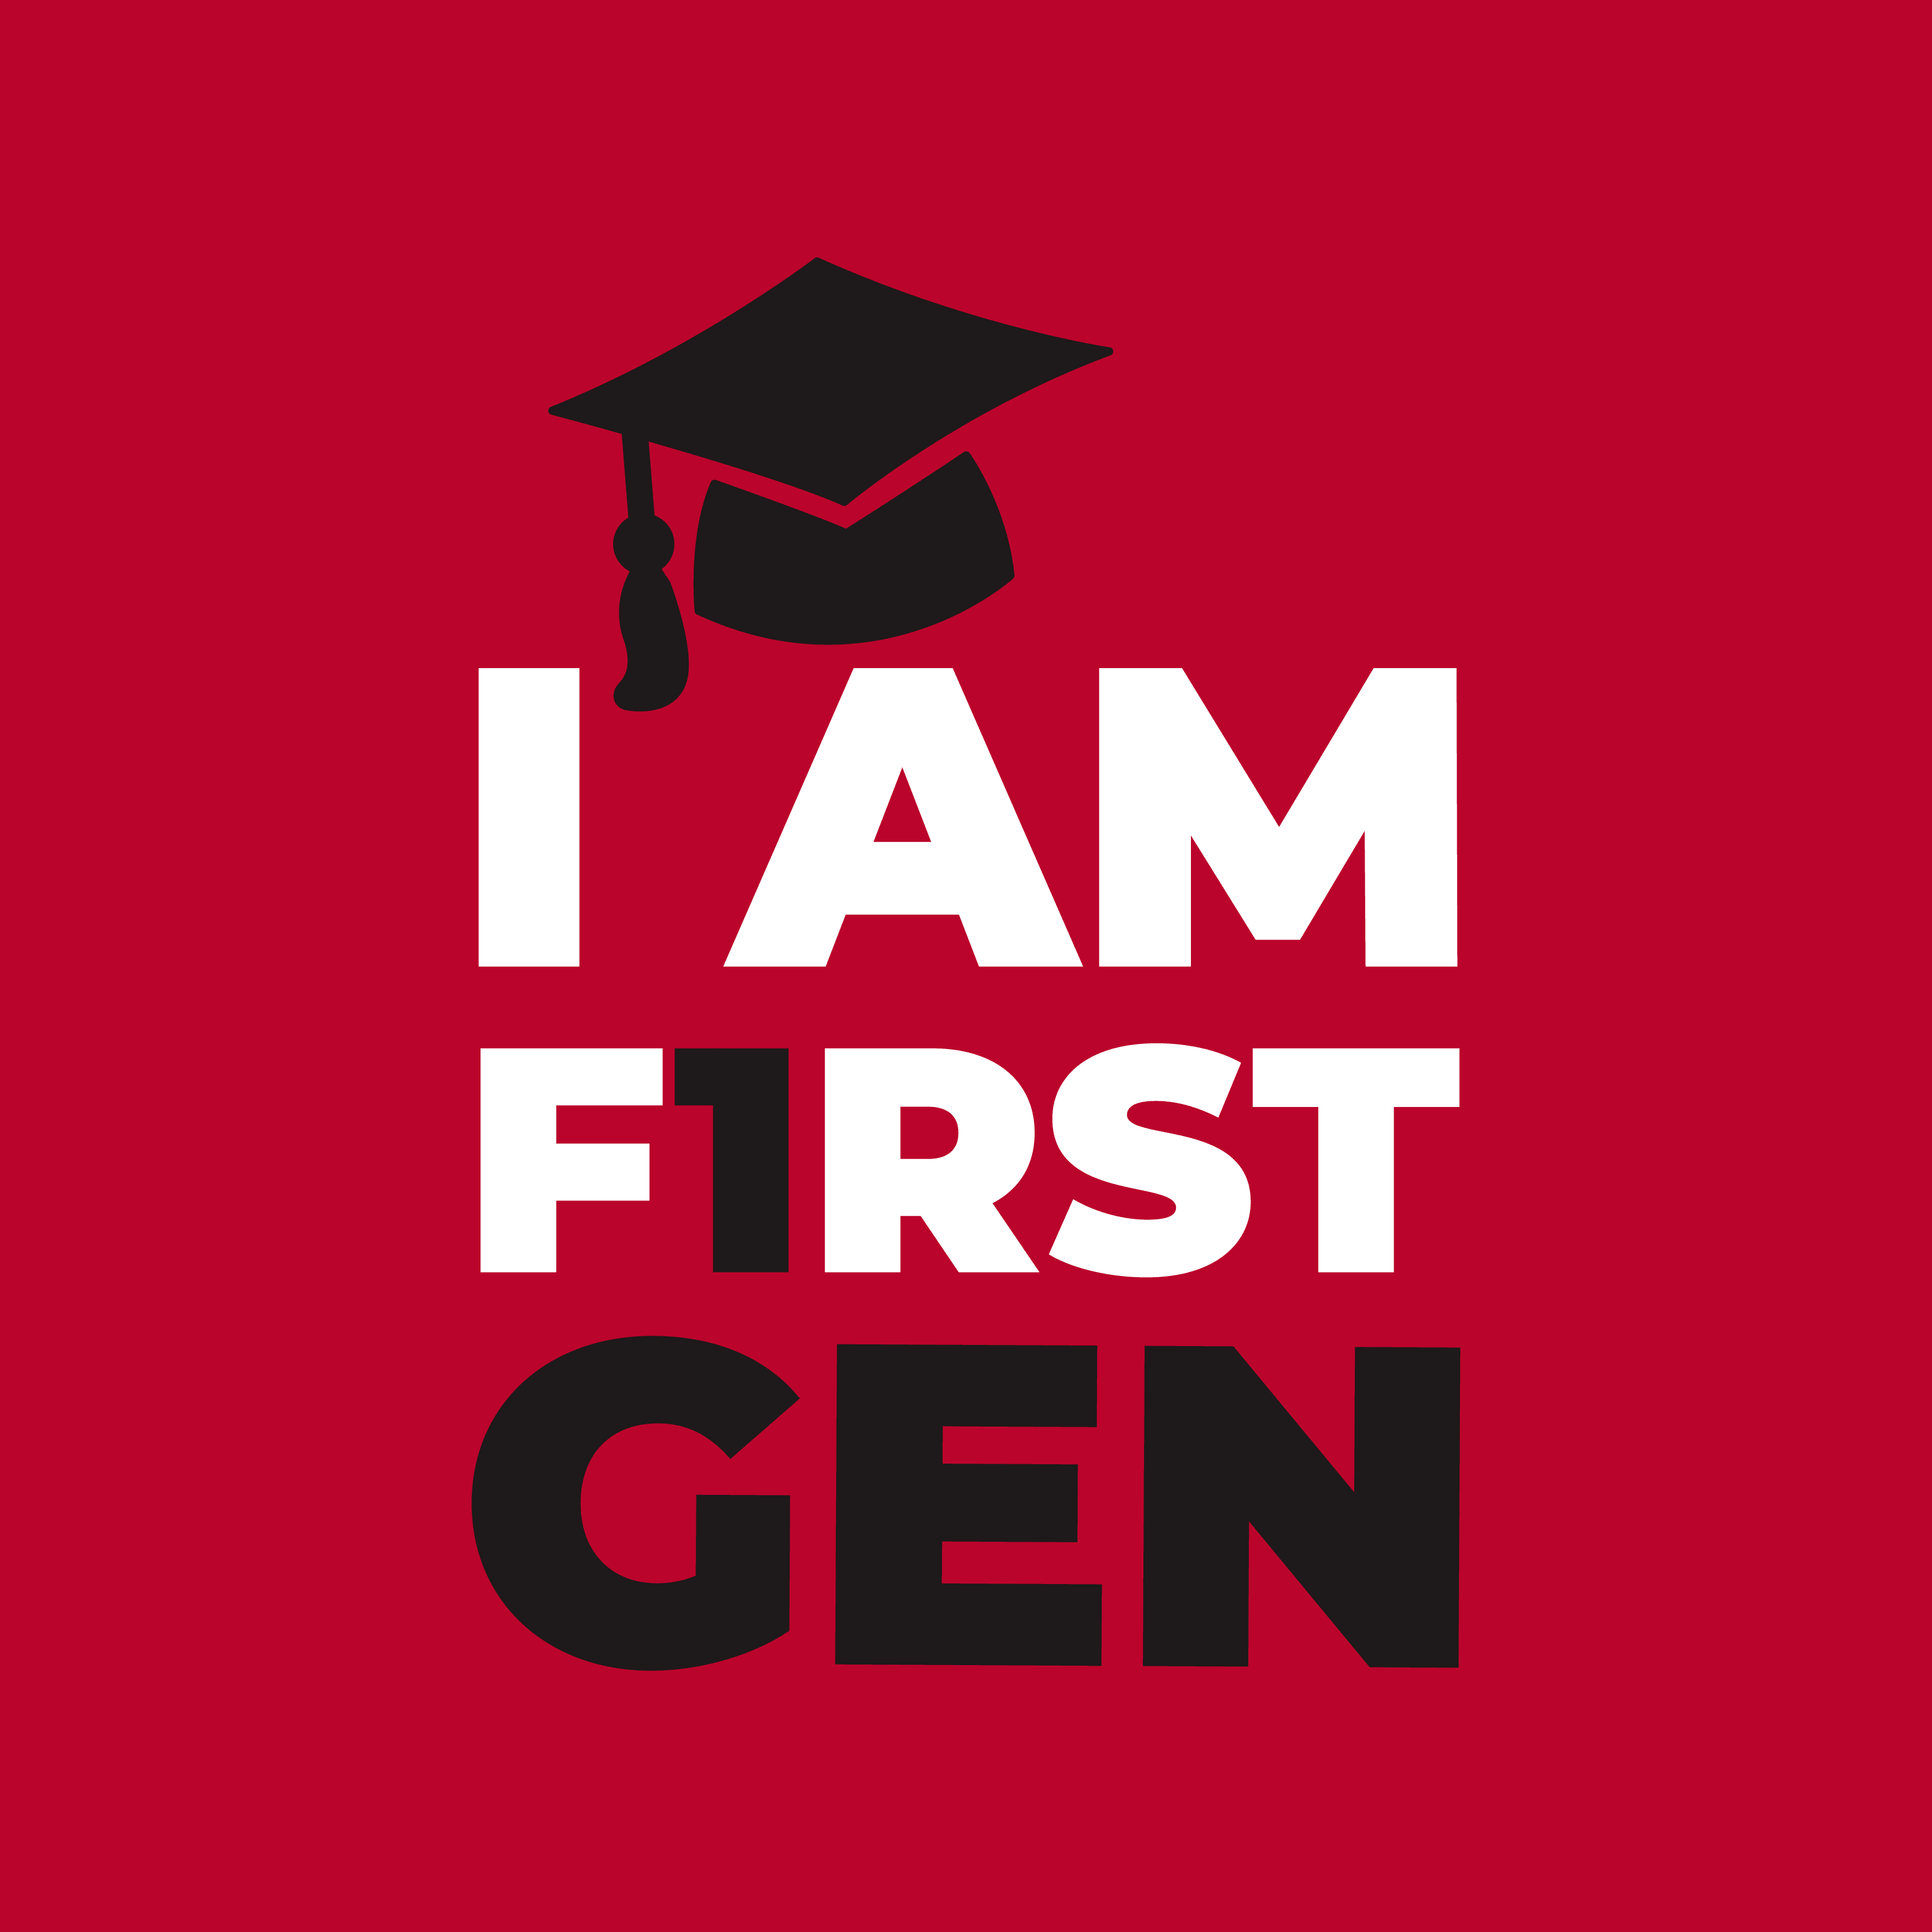 I am first gen